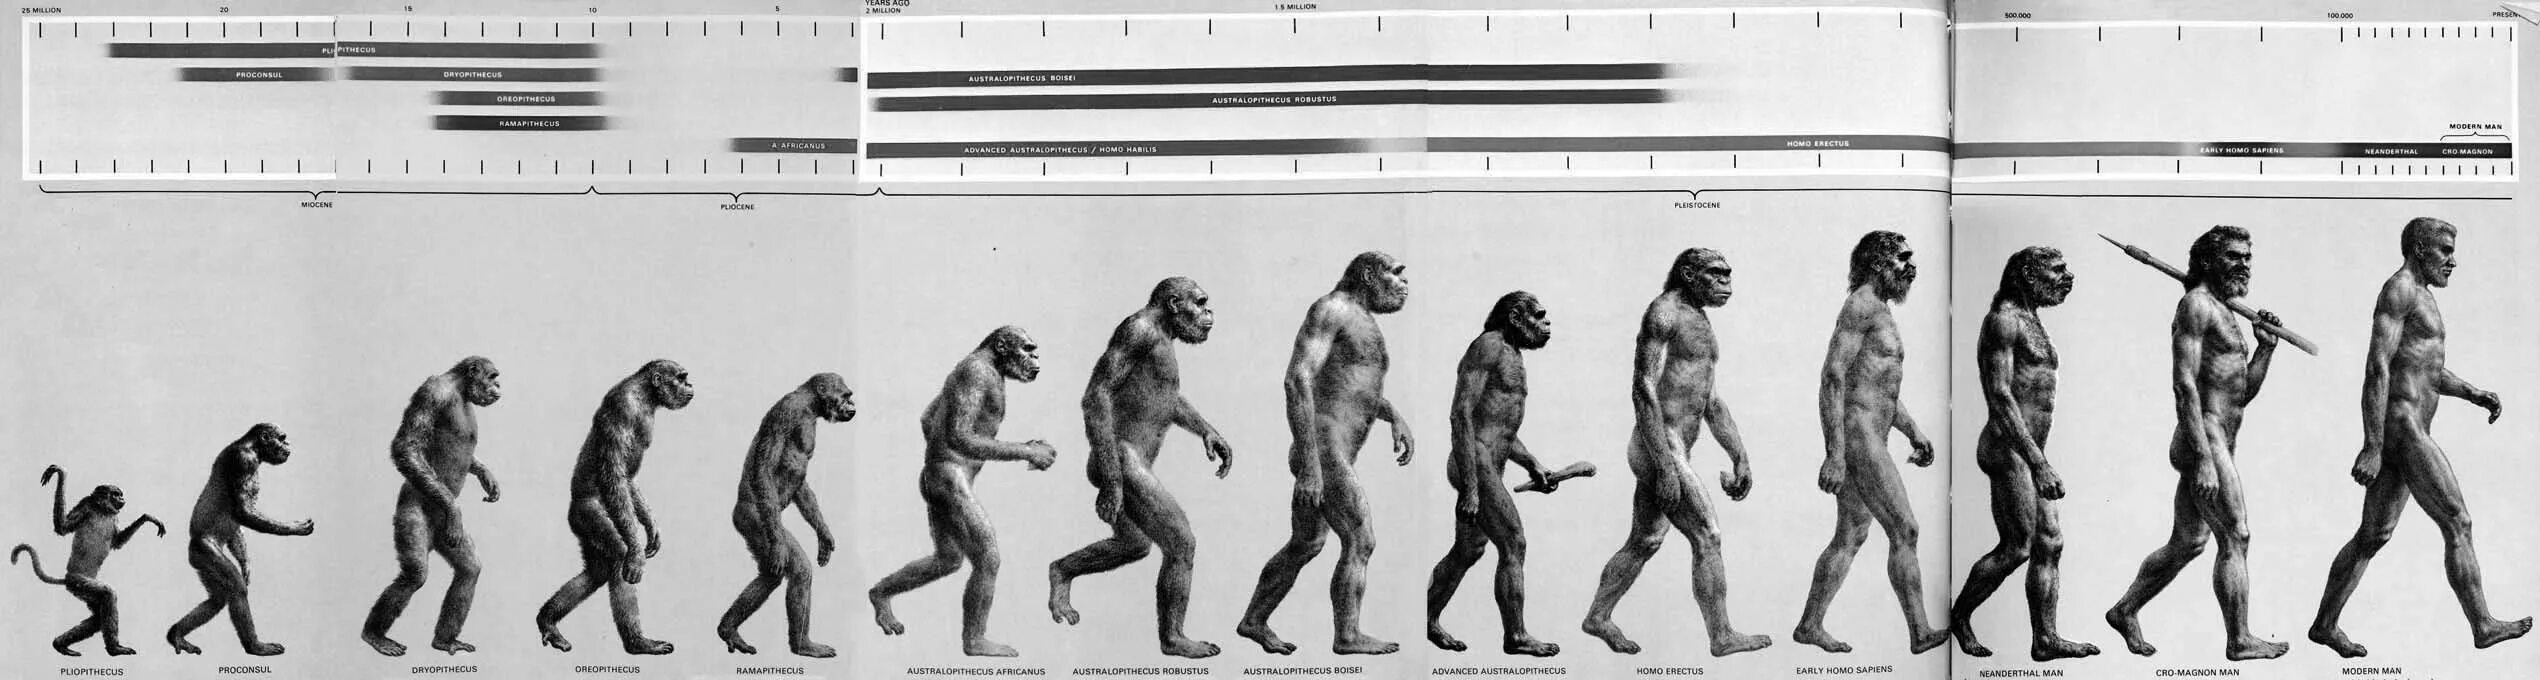 Эволюционные предков человека. Этапы эволюции хомо сапиенс. Эволюцию обезьяны в хомо сапиенс. Ступени развития человека хомо сапиенс. Этапы эволюции человека от австралопитека до homo sapiens.